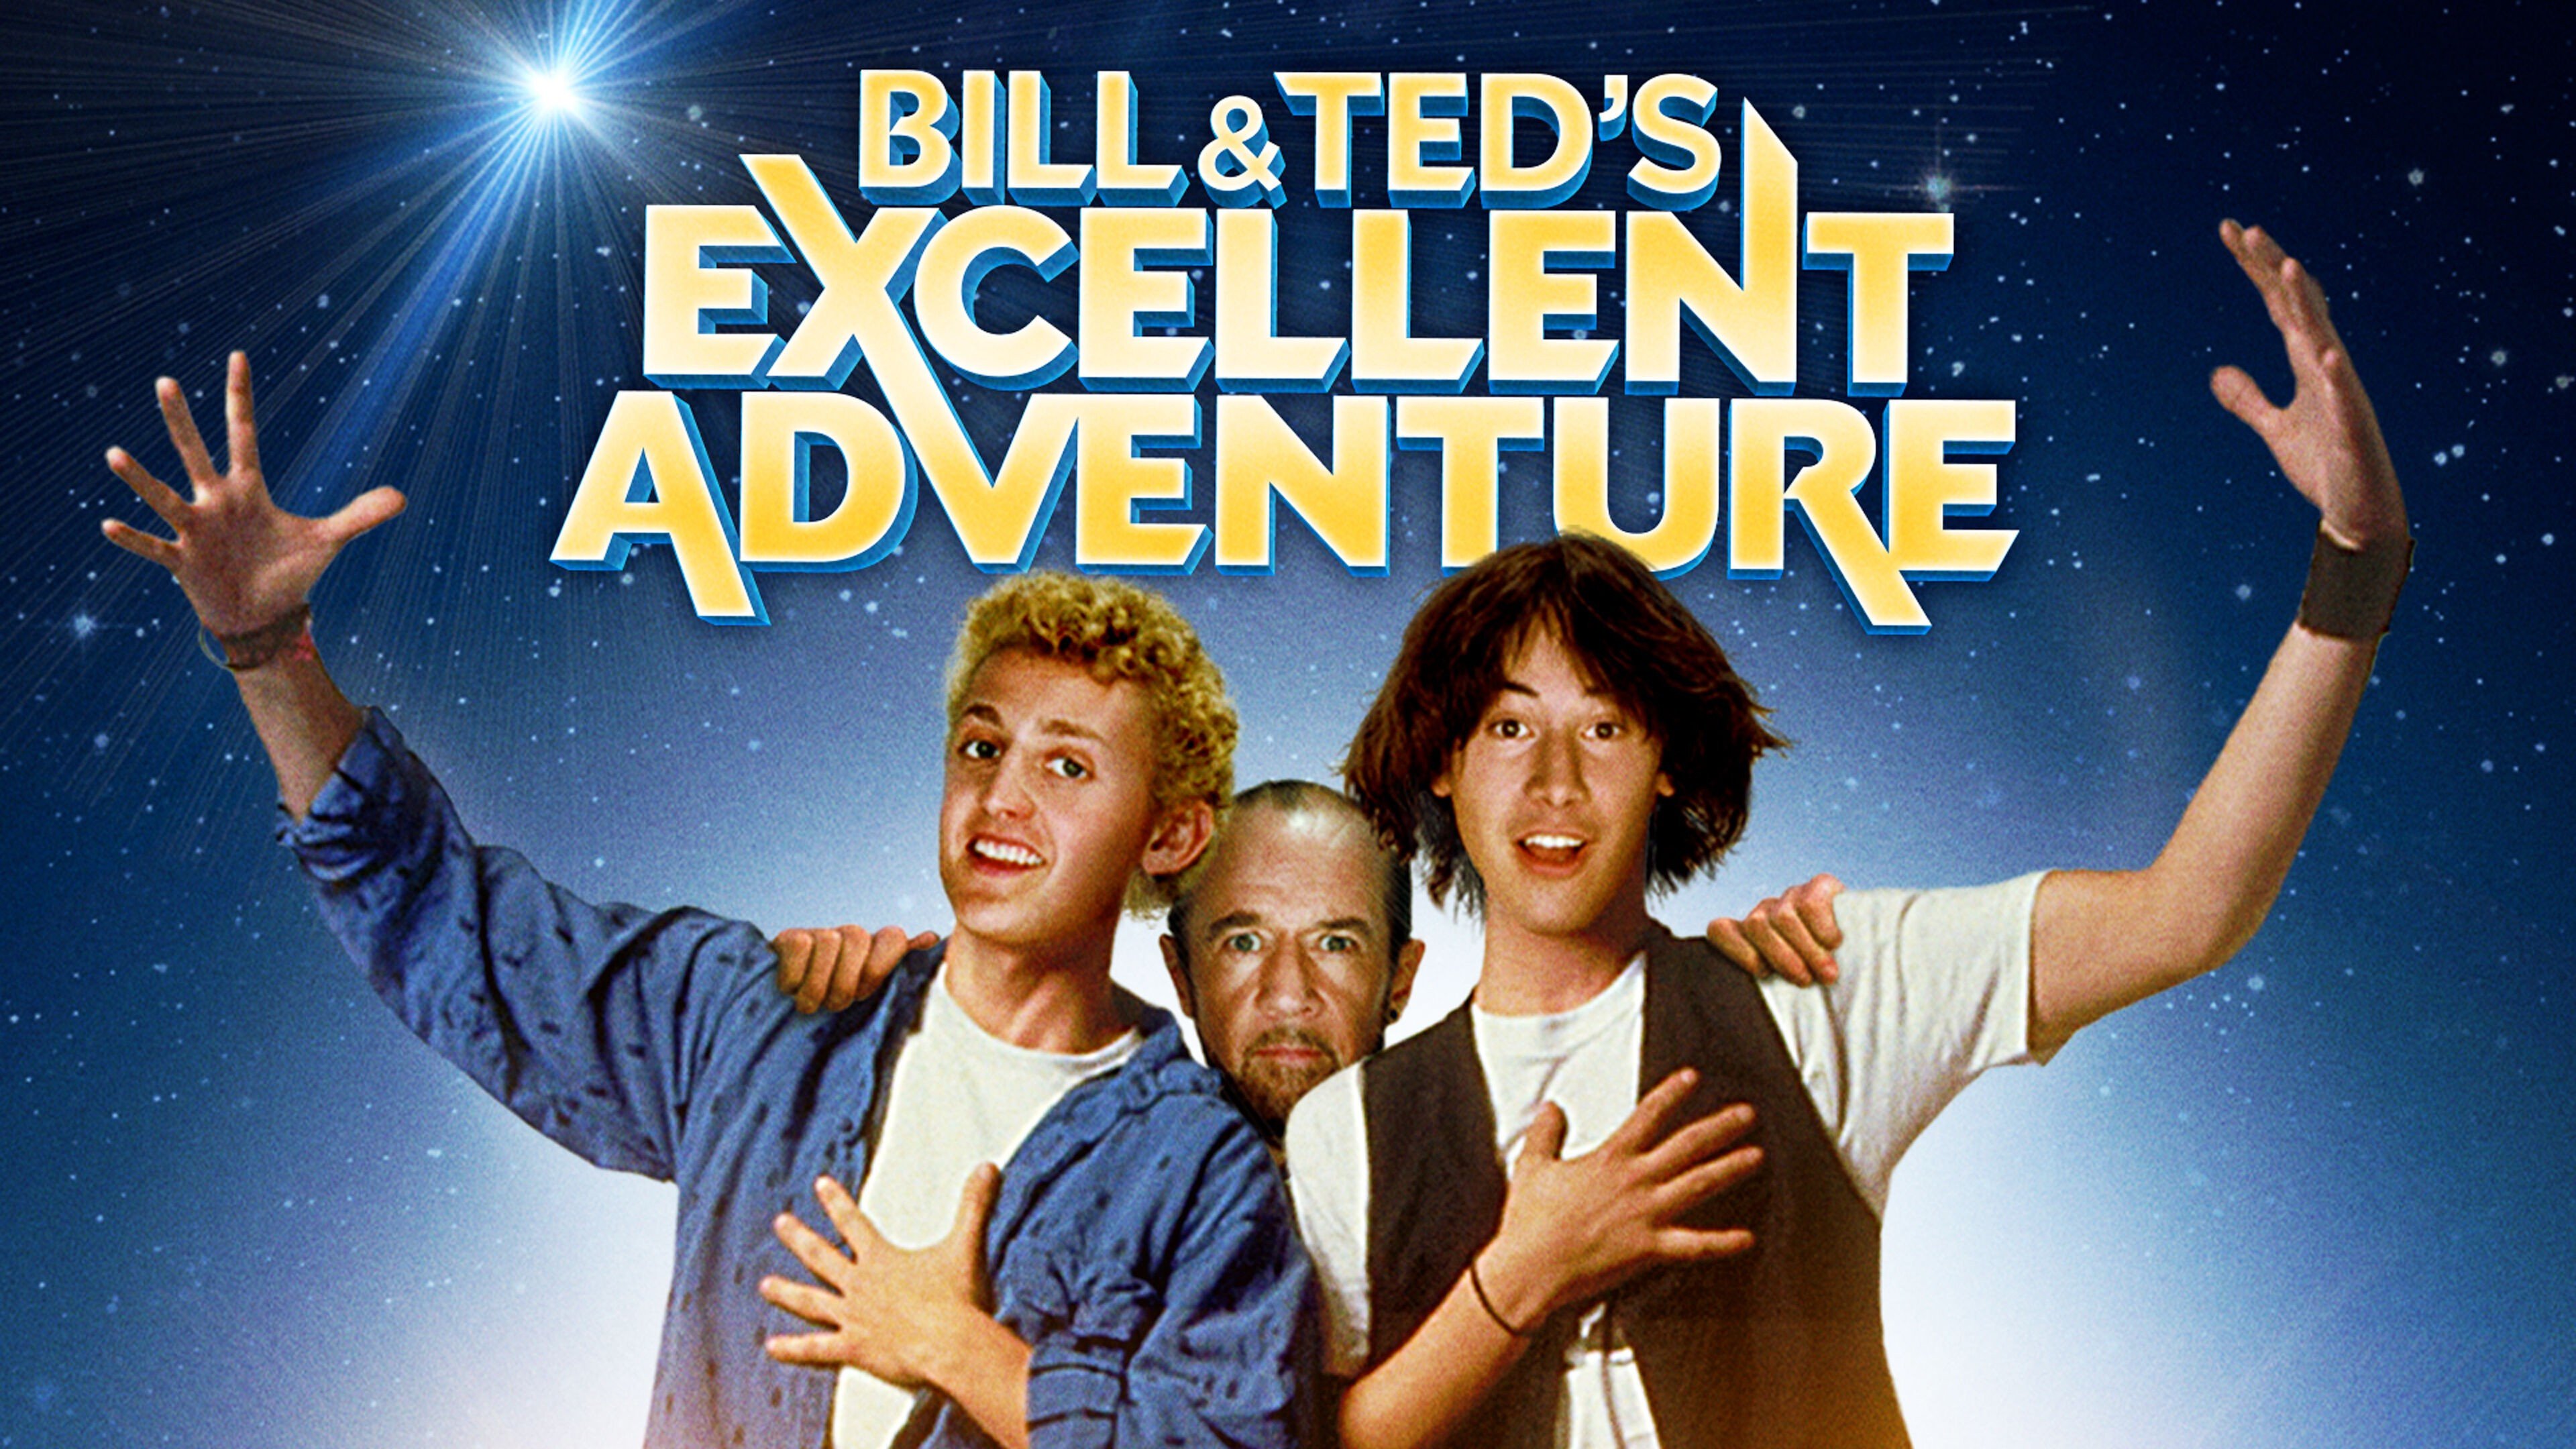 Bill & Ted’s Excellent Adventure là bộ phim đánh dấu sự nghiệp thành công Keanu Reeves